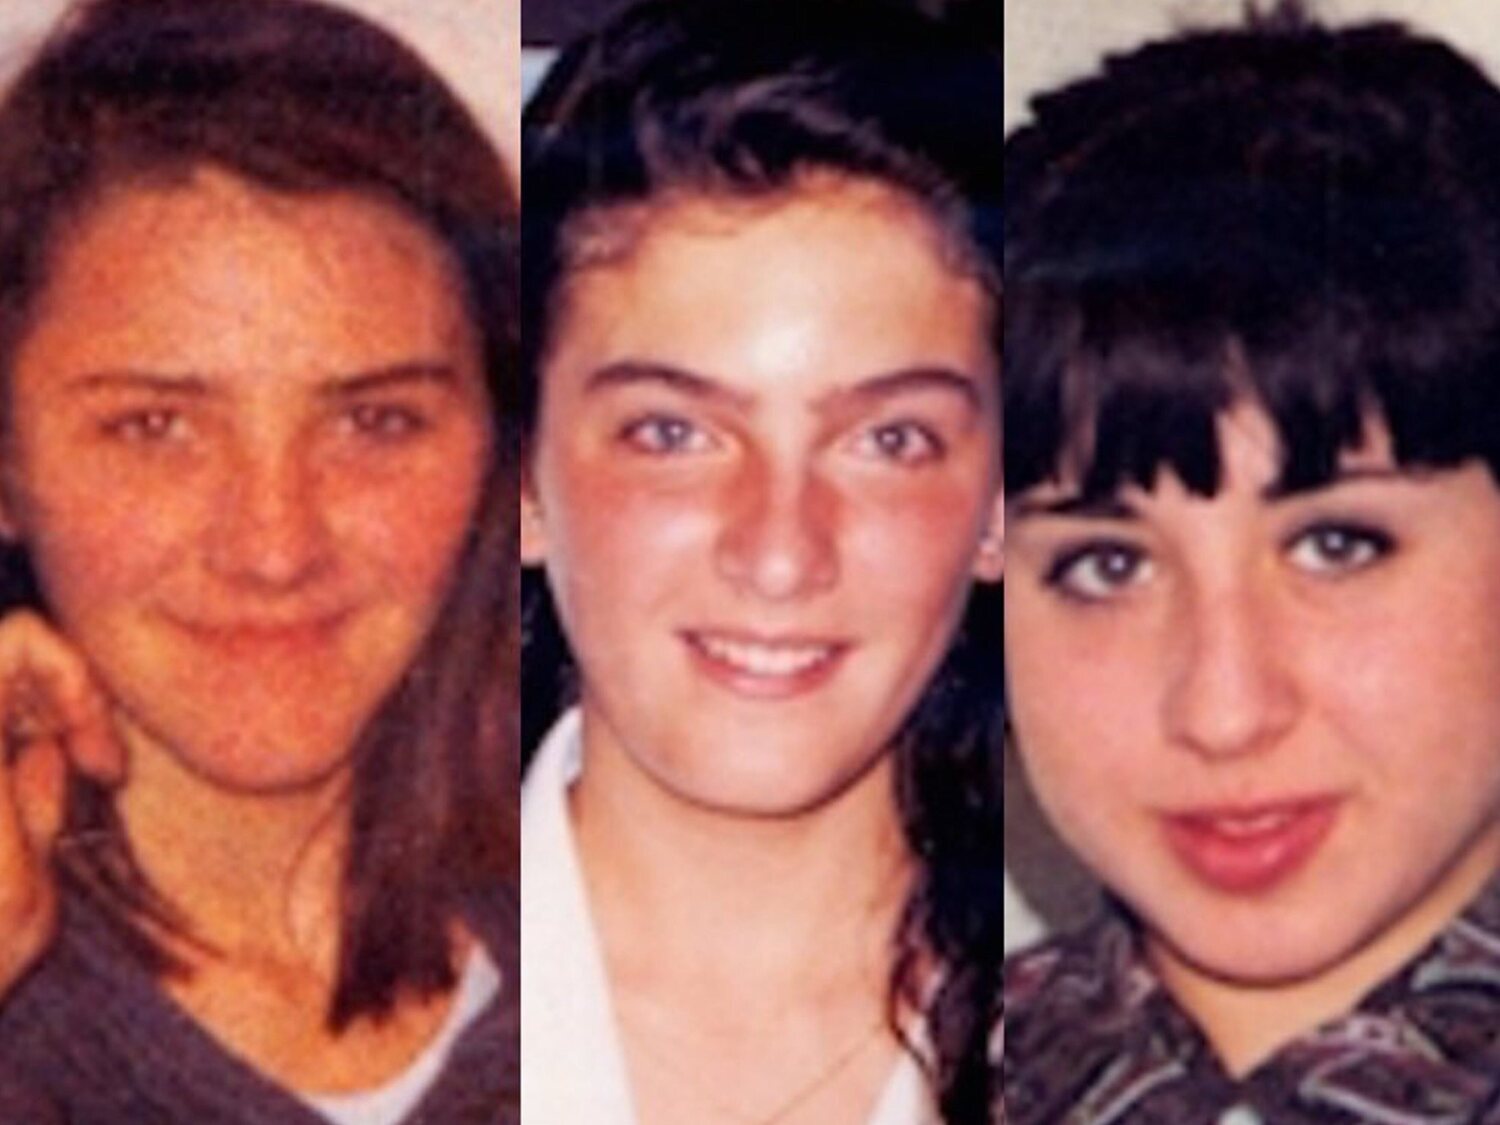 Novedades en el caso Alcàsser: piden analizar 11 pelos hallados en los cuerpos de las niñas